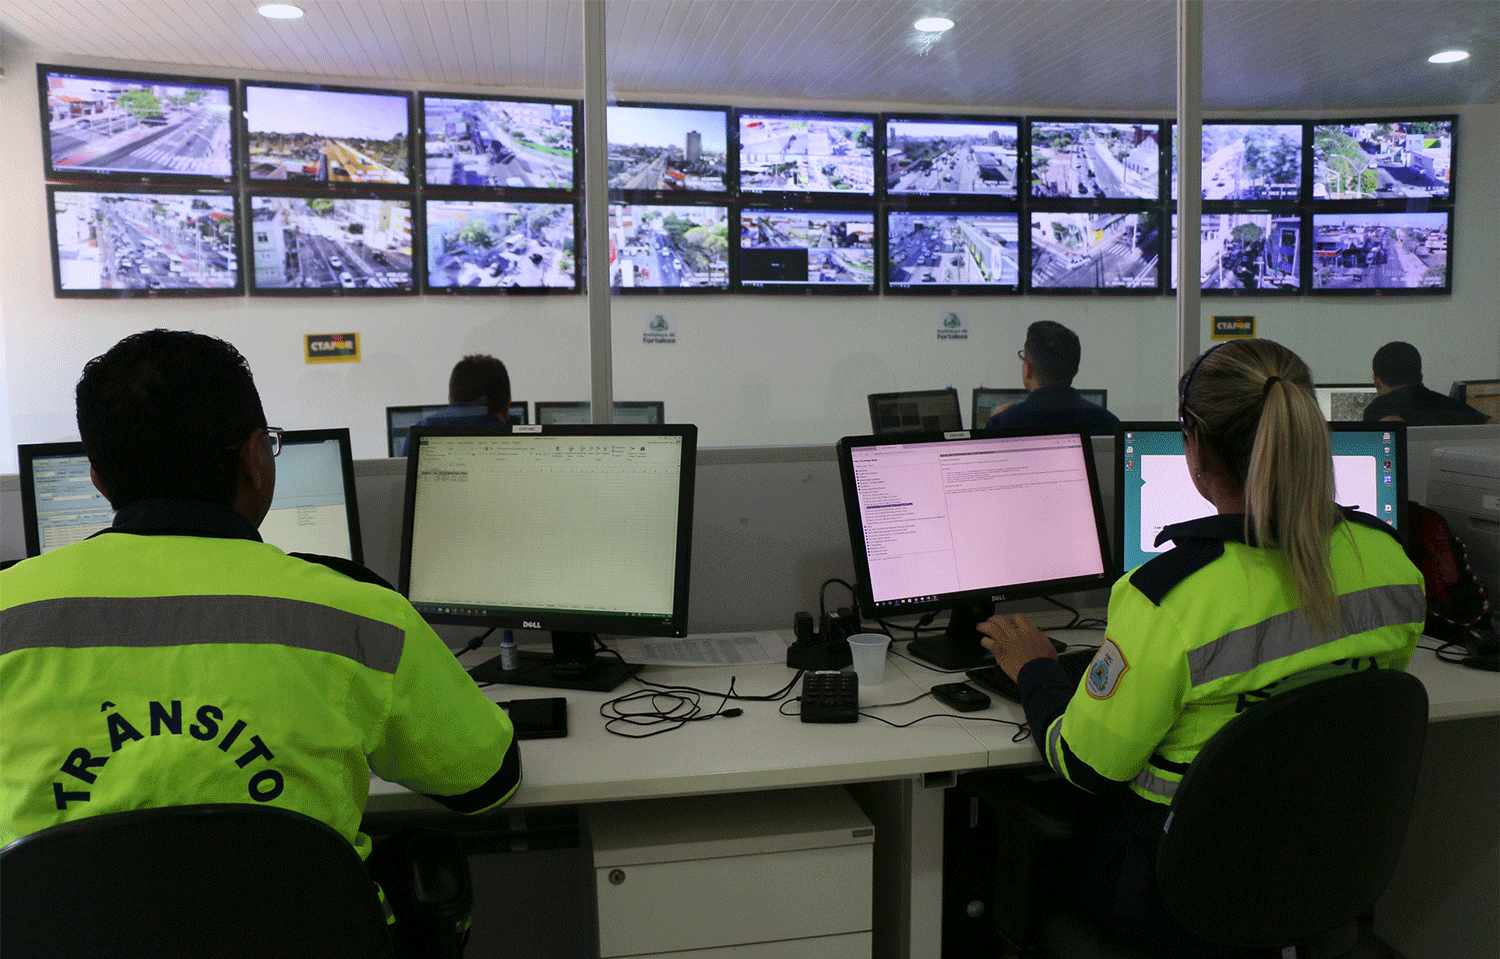 Pelos centros de monitoramento o agente pode aplicar multas com base na observação das imagens